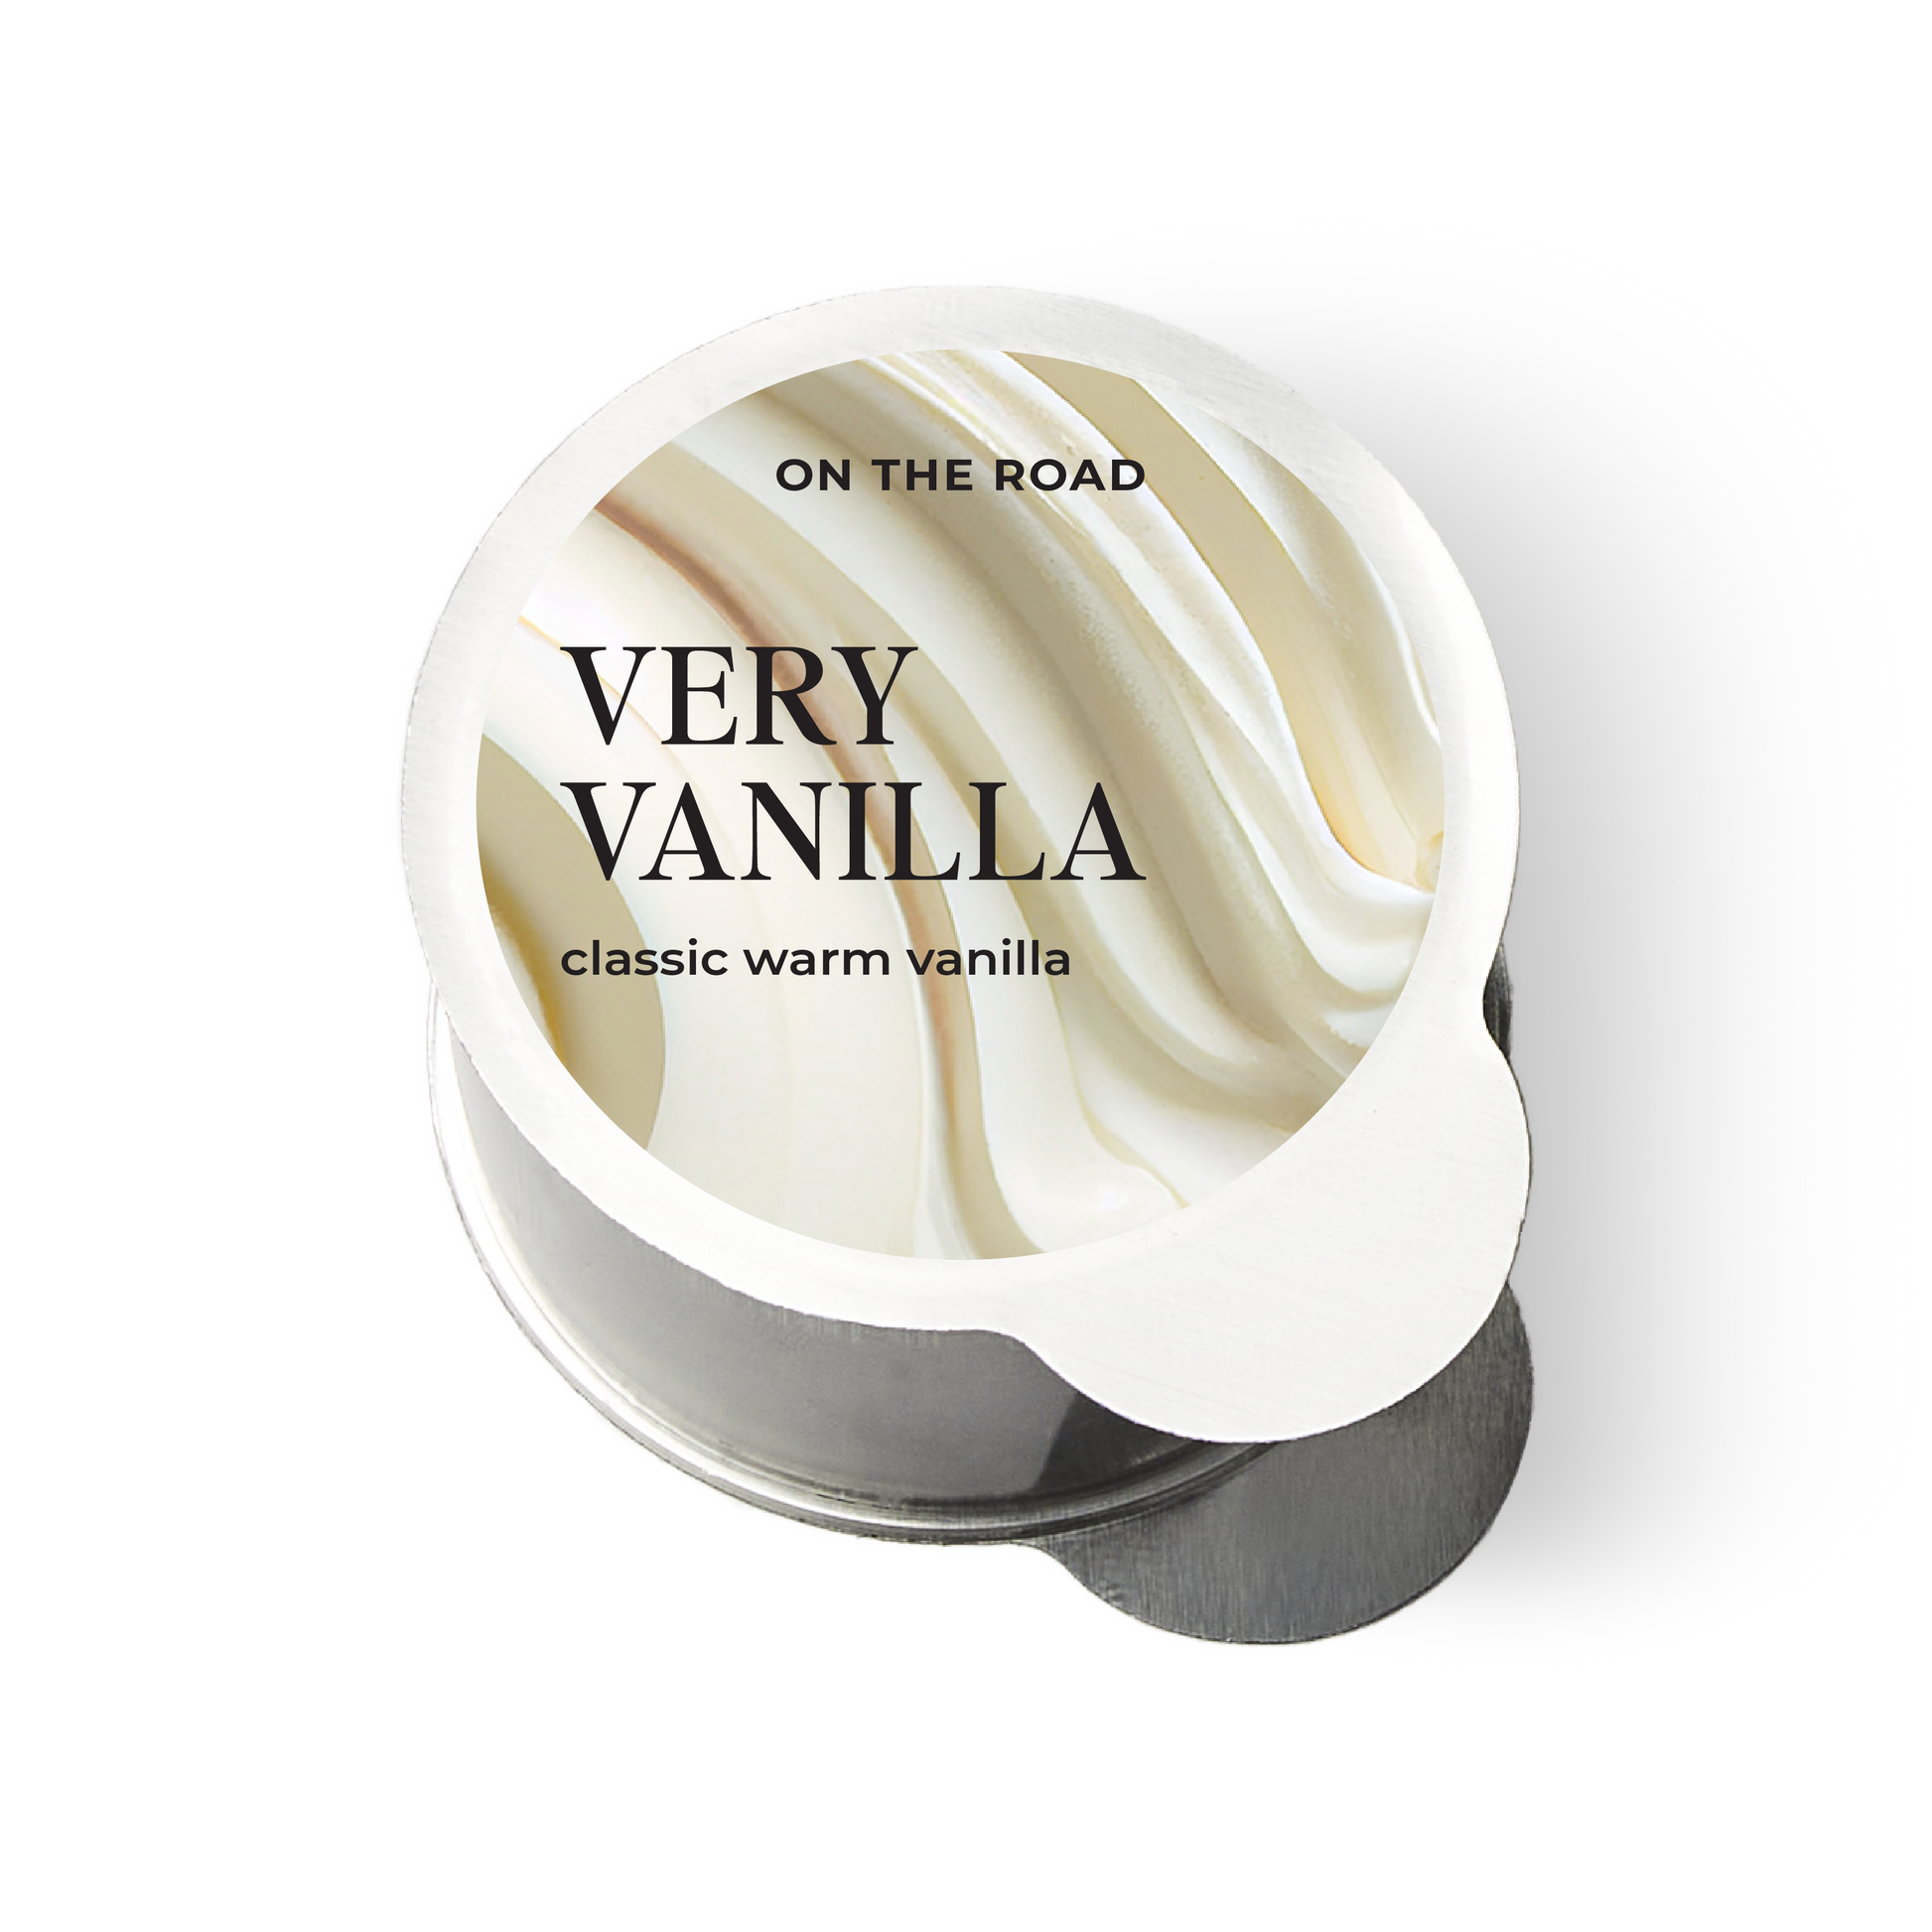 Very Vanilla - On the Road - MojiLife